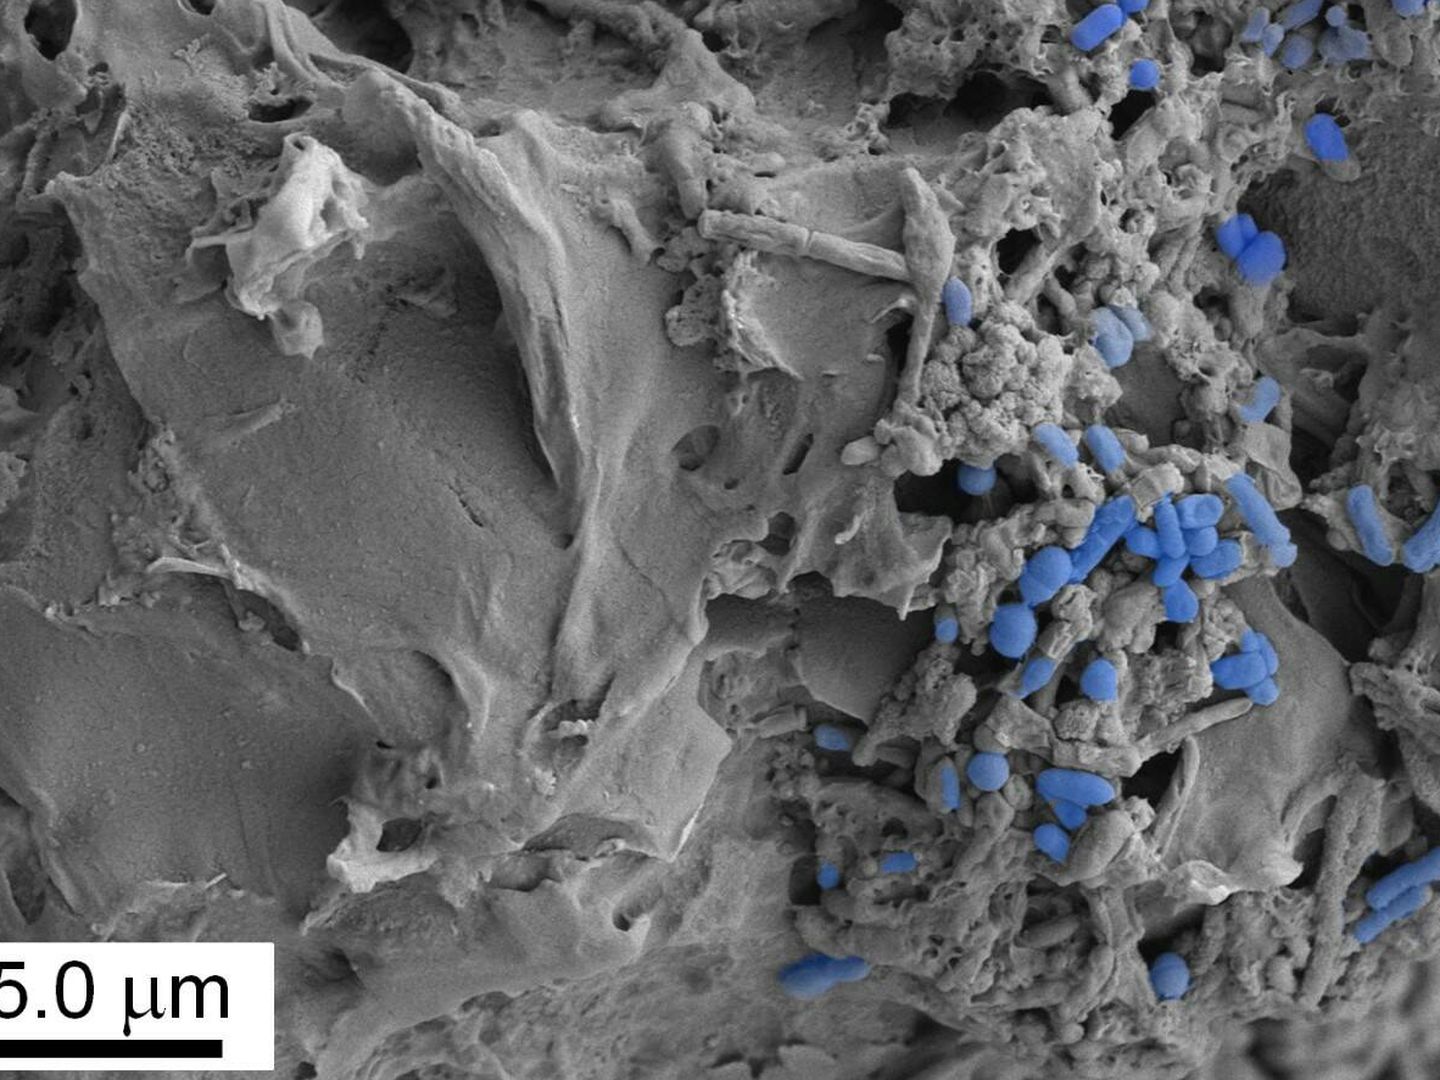 Los microplásticos son partículas de este material de un tamaño de 0,001 a 5 milímetros (EFE).